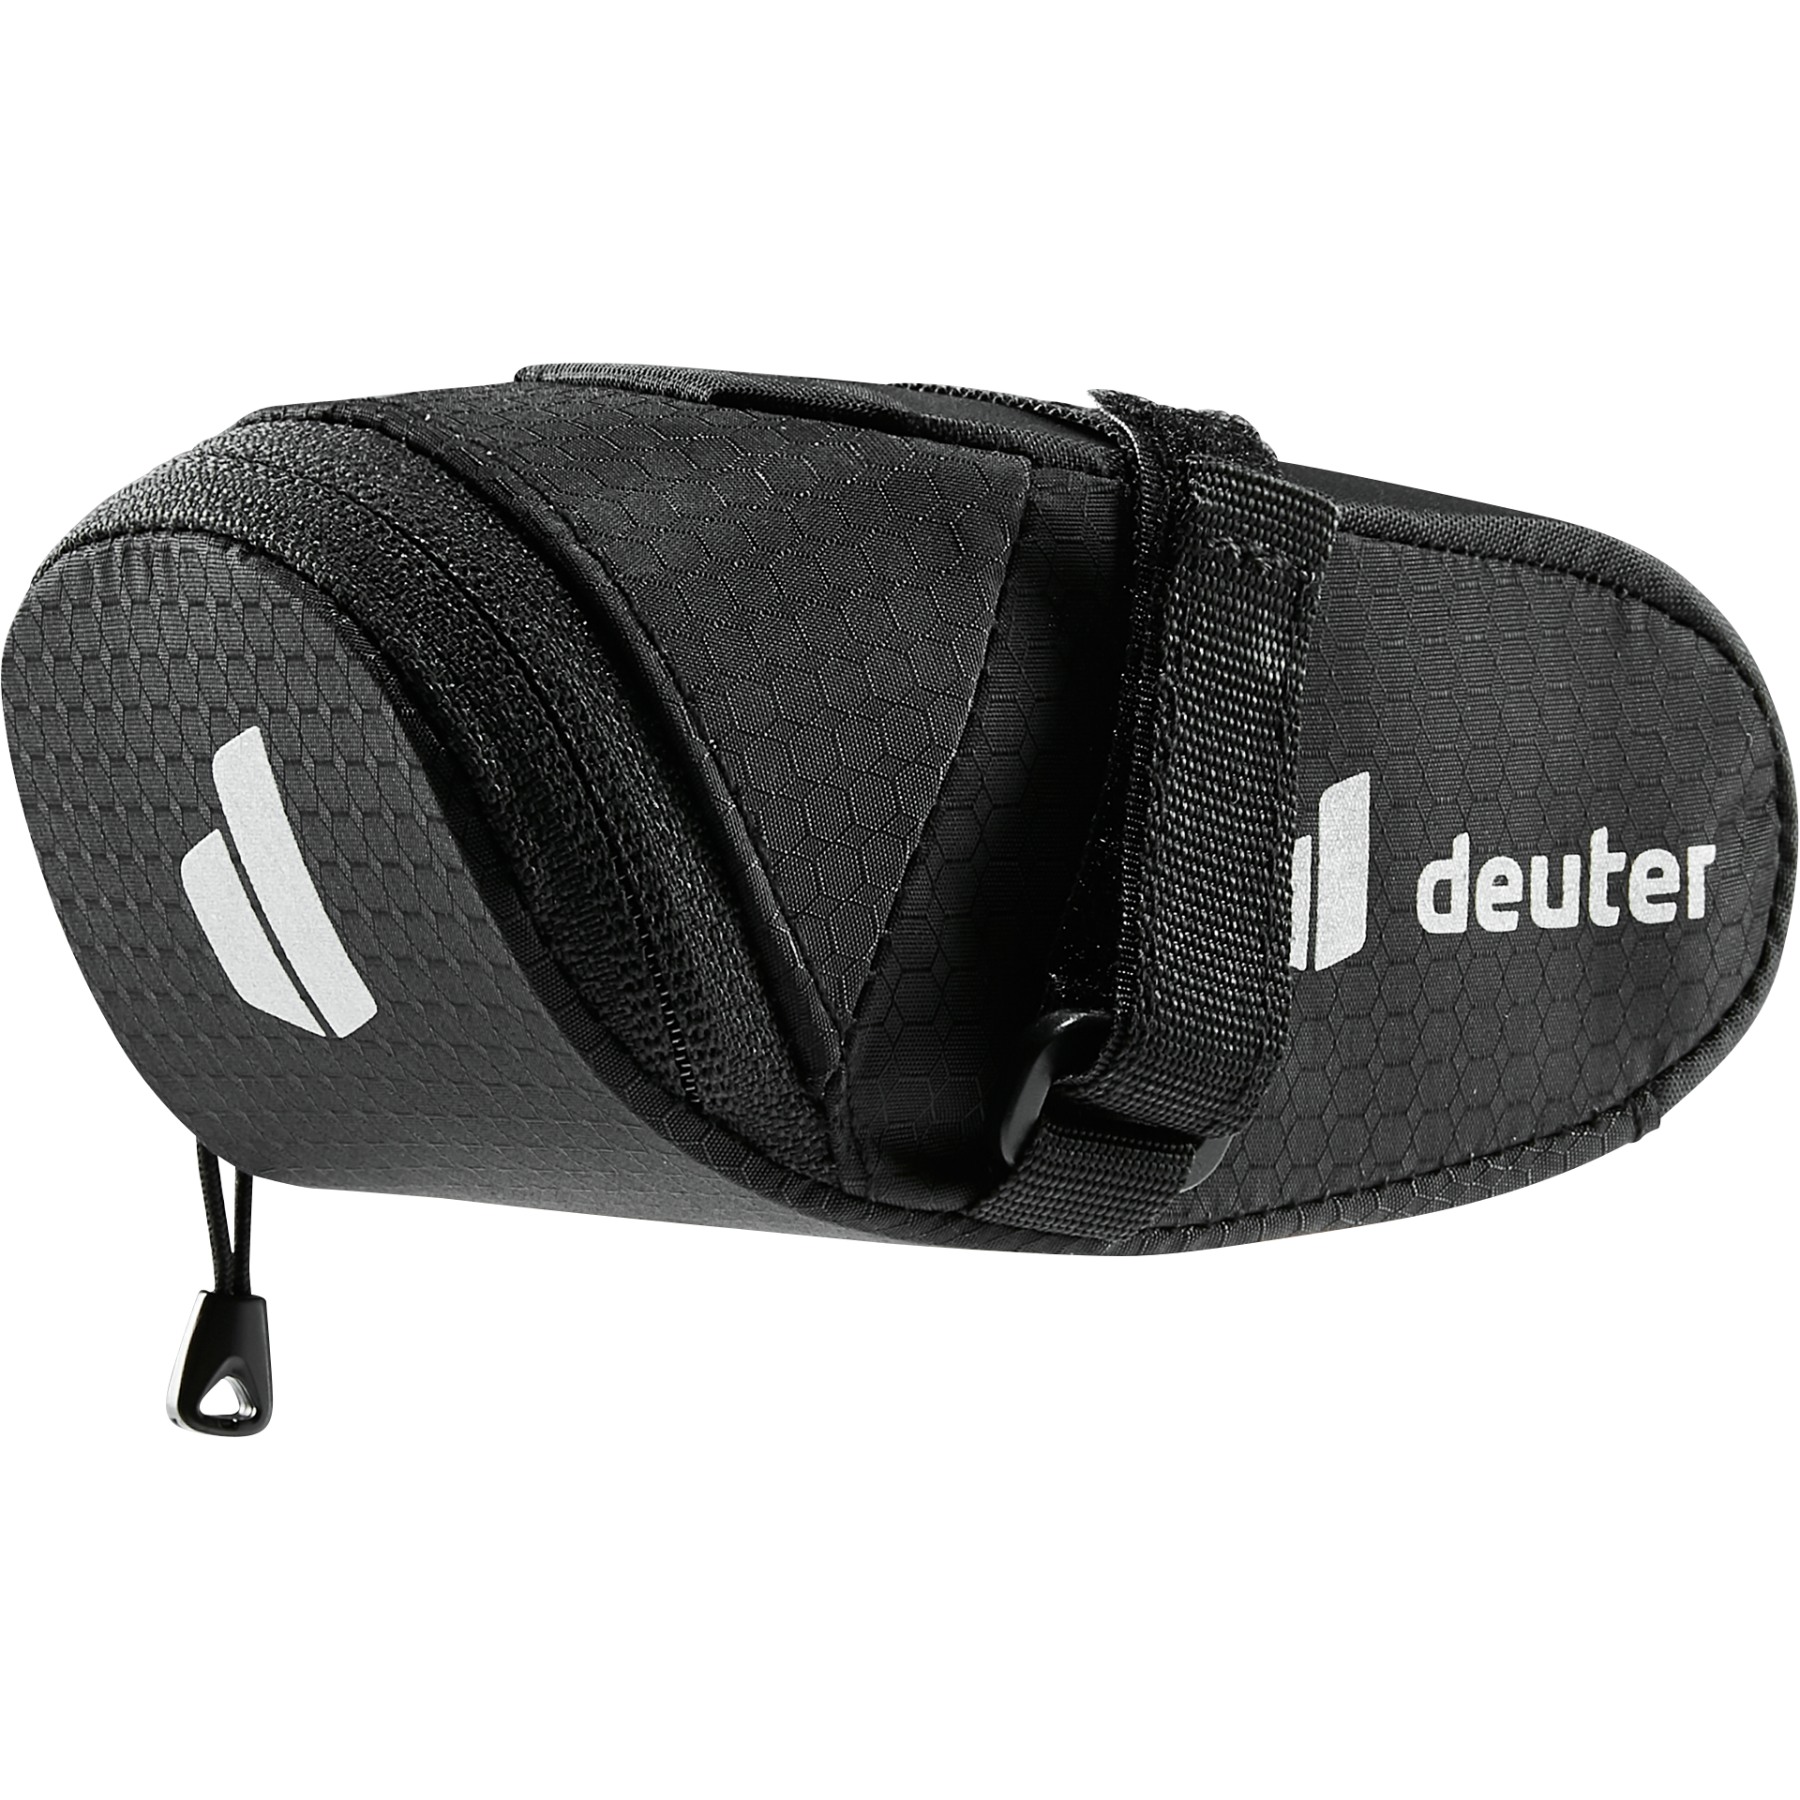 Productfoto van Deuter Bike Bag 0.3L Zadeltas - black